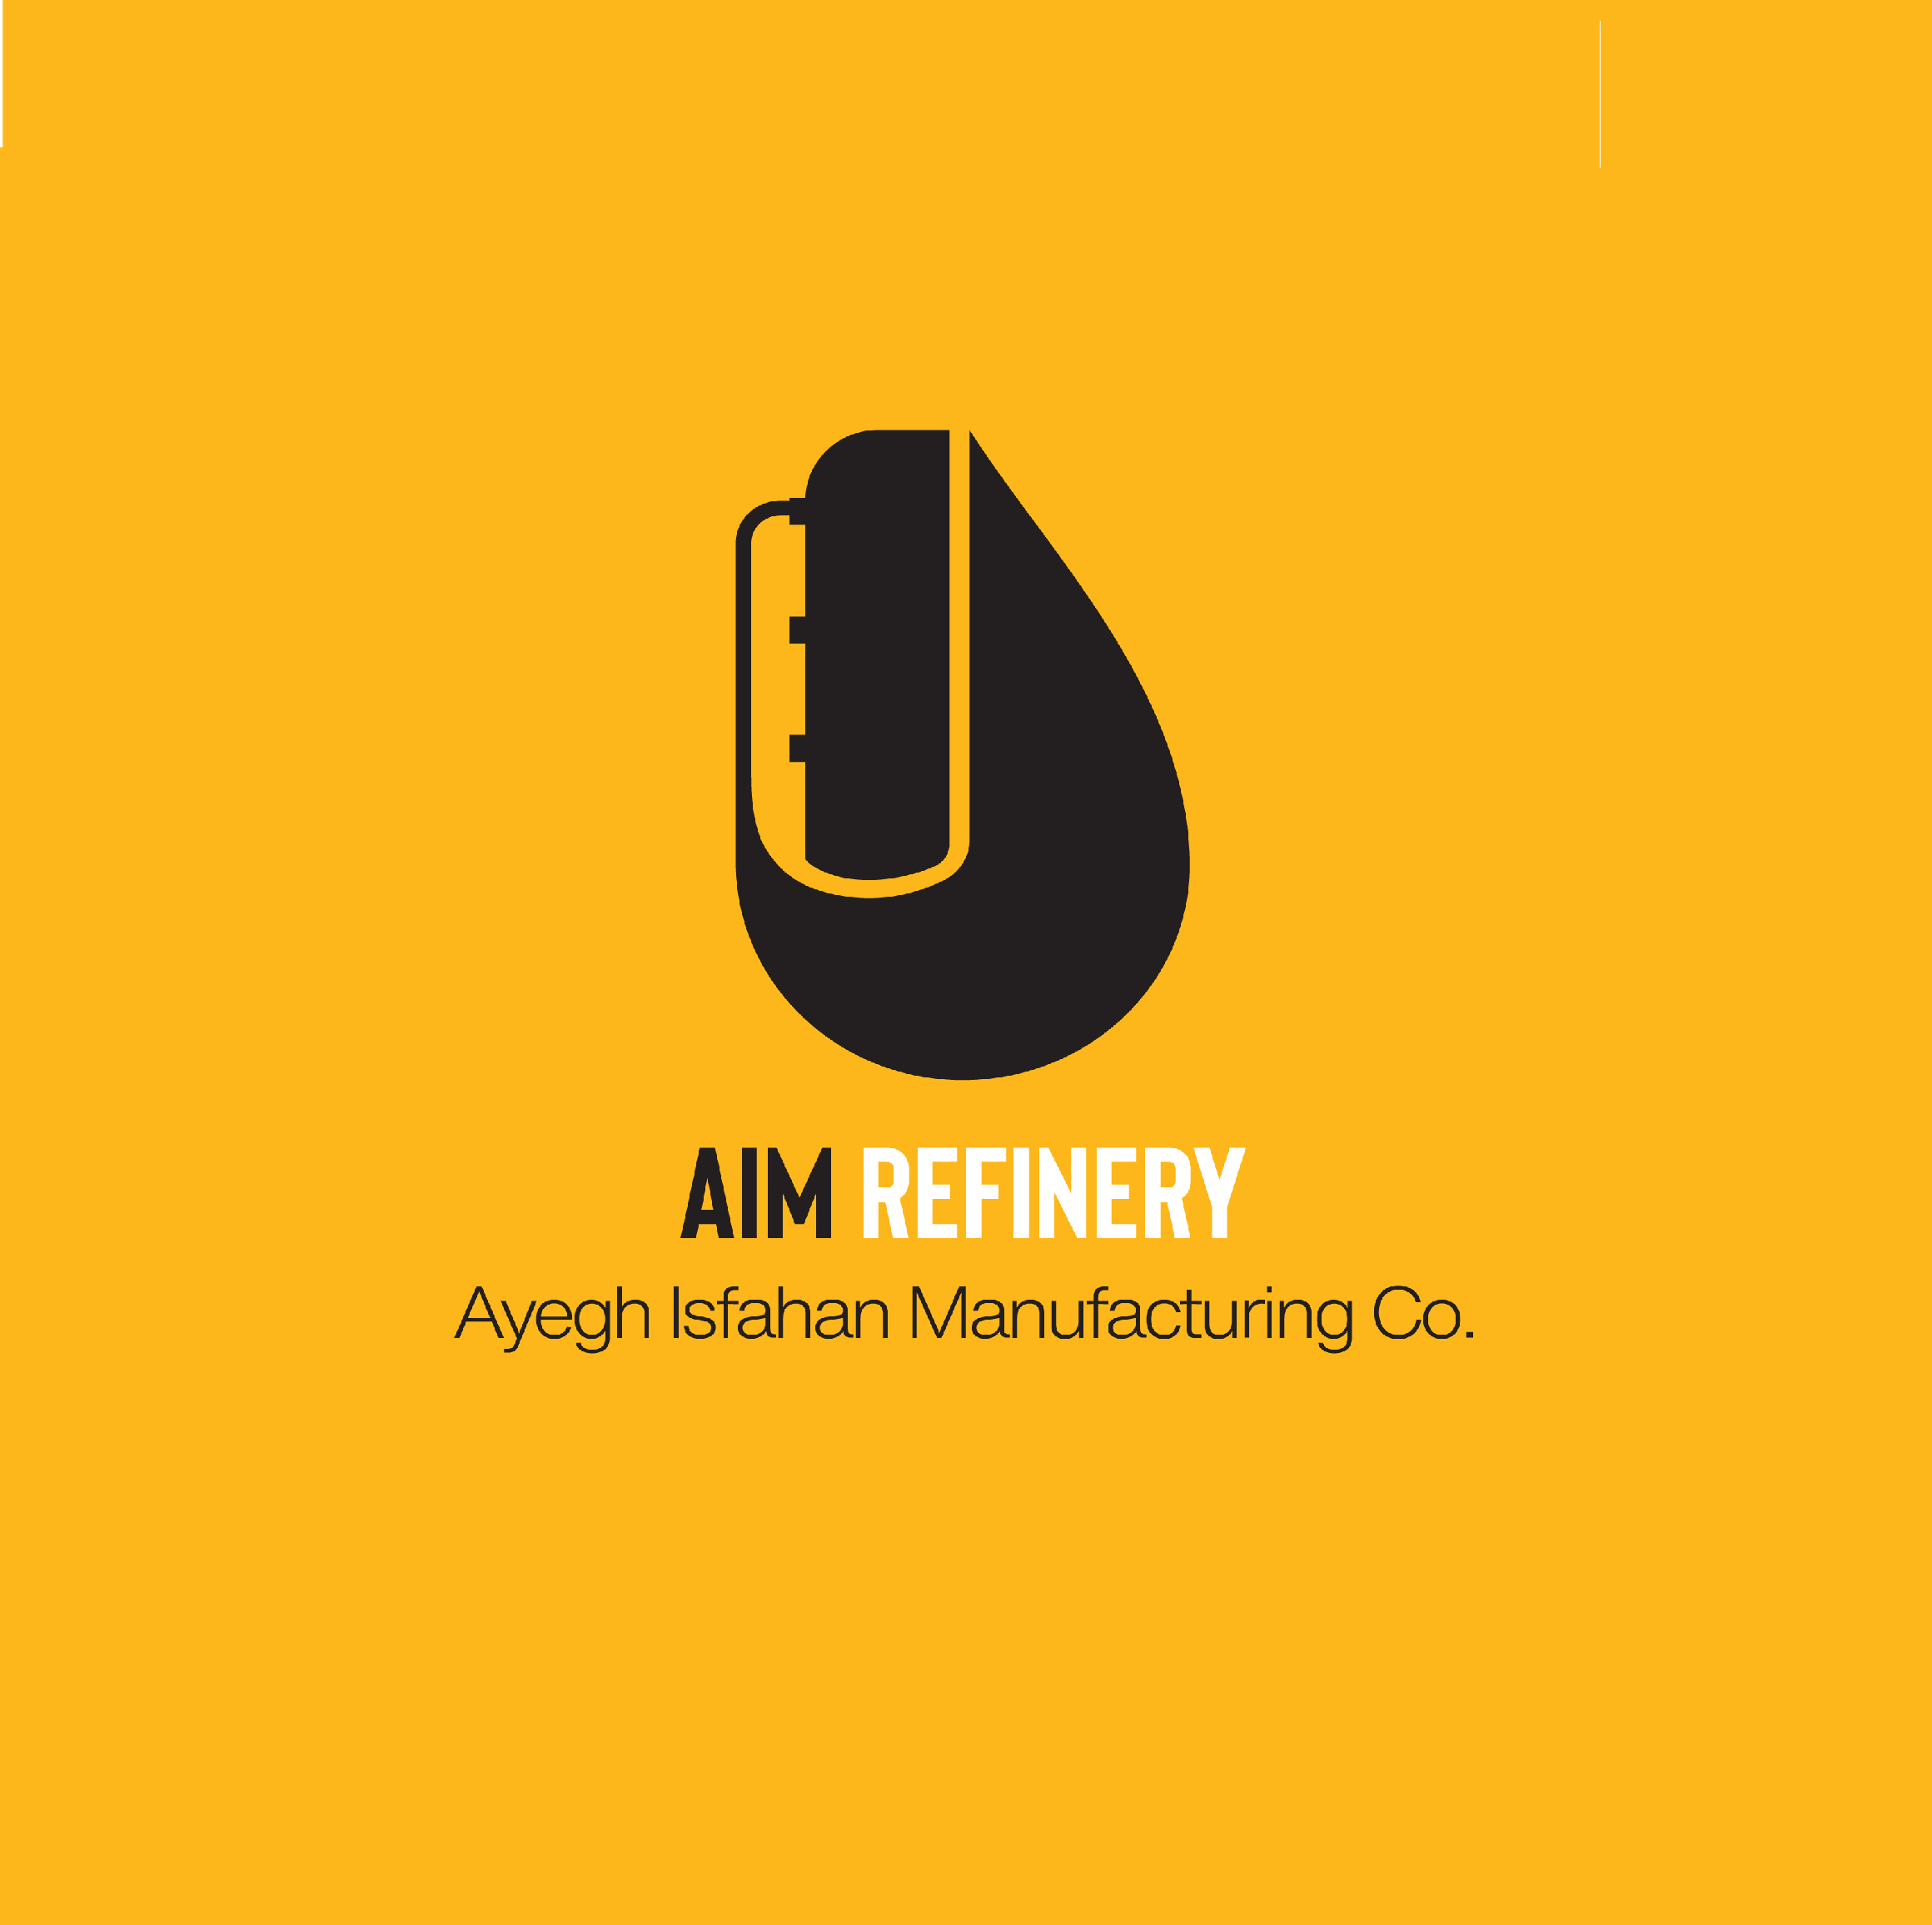 کارشناس بازرگانی | Commercial Expert - عایق اصفهان | AIM Refinery